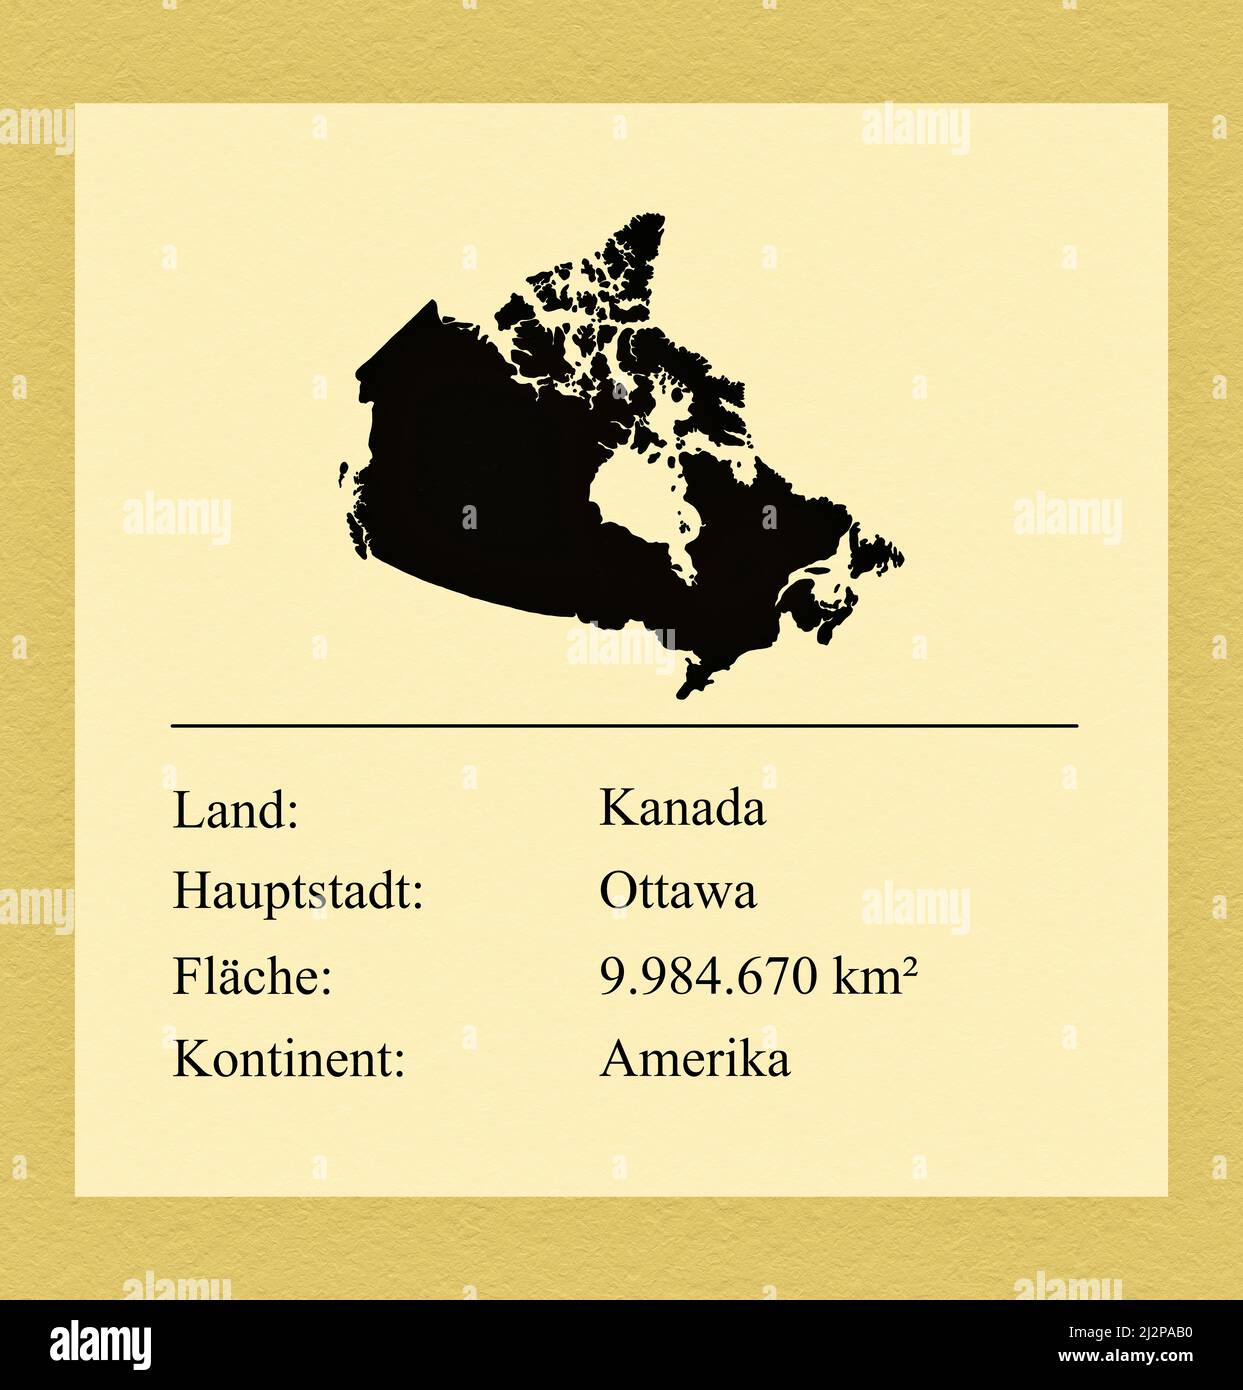 Umrisse des Landes Kanada, darunter ein kleiner Steckbrief mit Ländernamen, Hauptstadt, Fläche und Kontinent Foto Stock